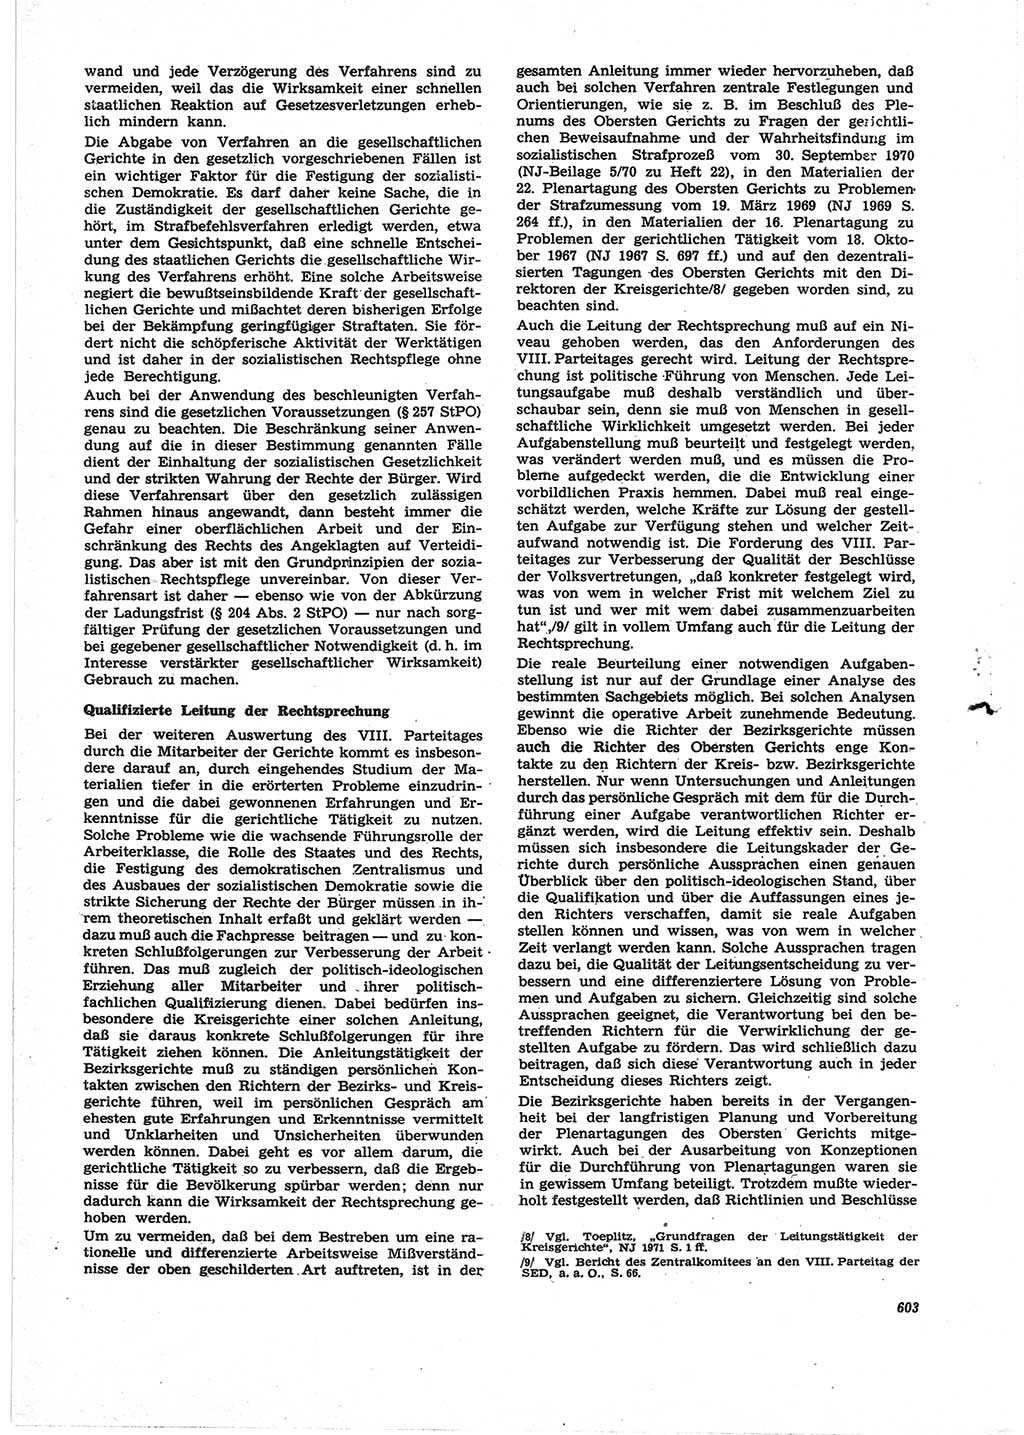 Neue Justiz (NJ), Zeitschrift für Recht und Rechtswissenschaft [Deutsche Demokratische Republik (DDR)], 25. Jahrgang 1971, Seite 603 (NJ DDR 1971, S. 603)